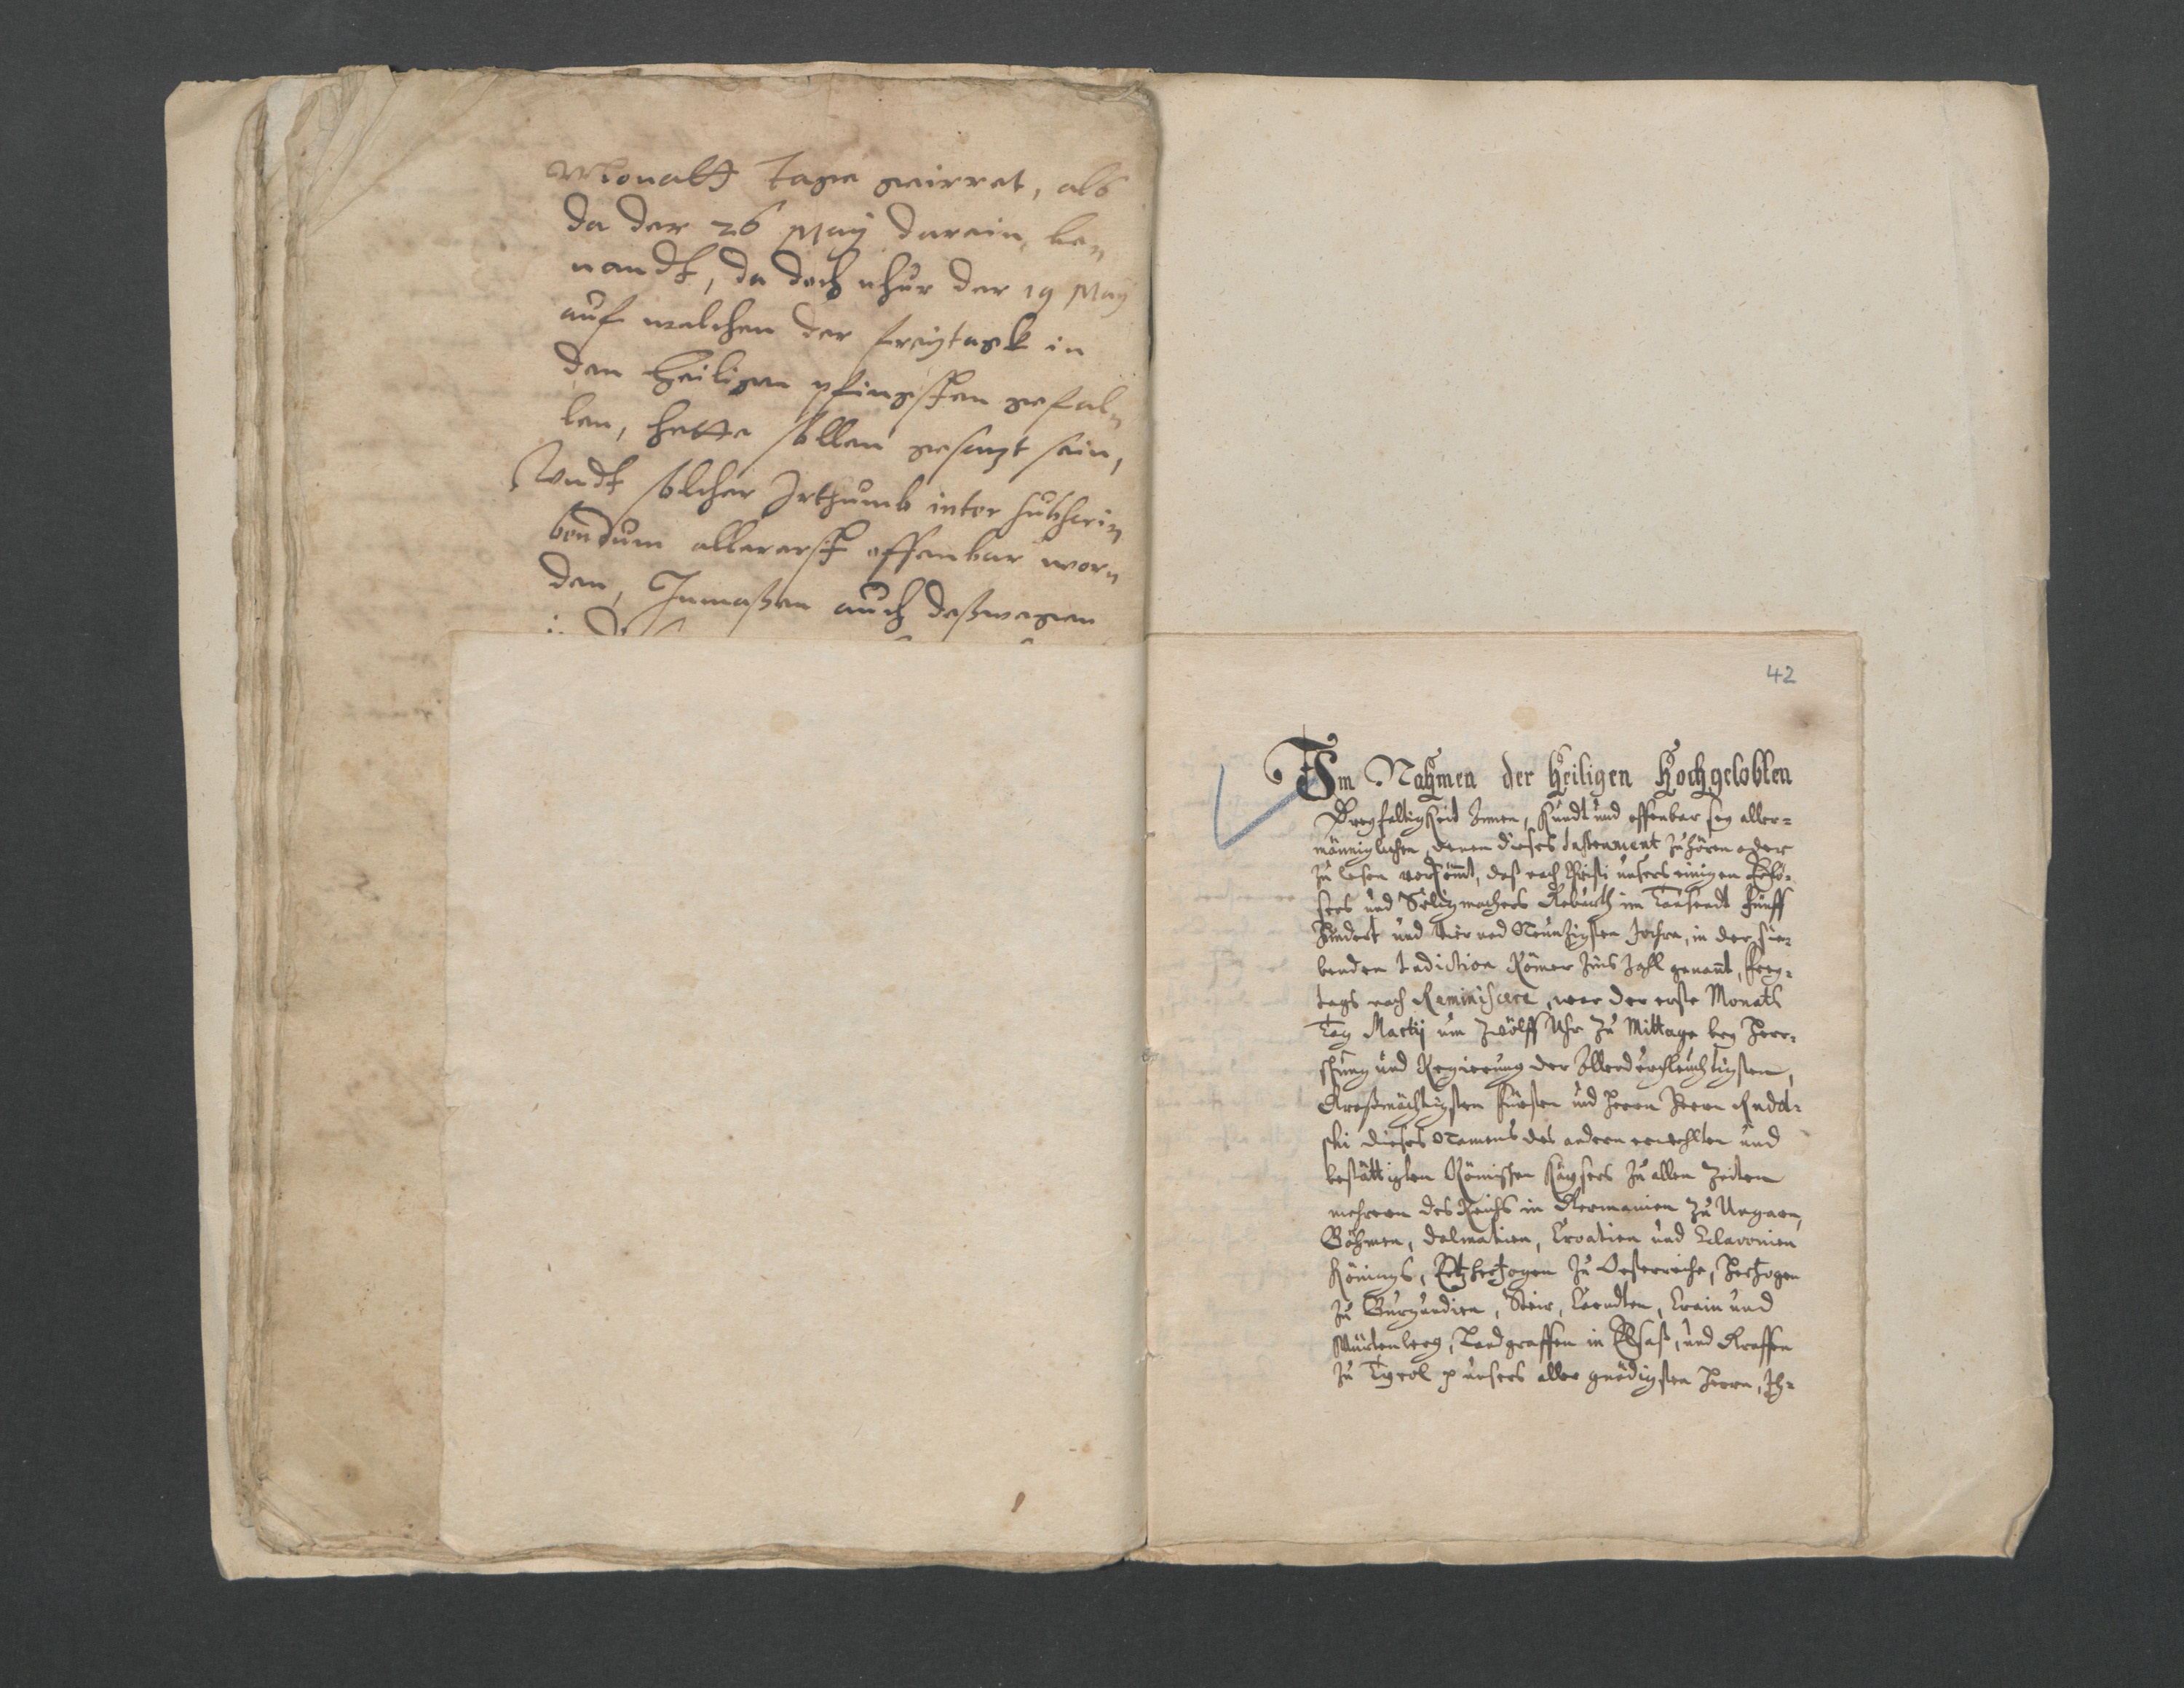 Notariell beglaubigte Änderung zum Testament...(1594) (Domstiftsarchiv Brandenburg/Havel CC BY-NC-SA)